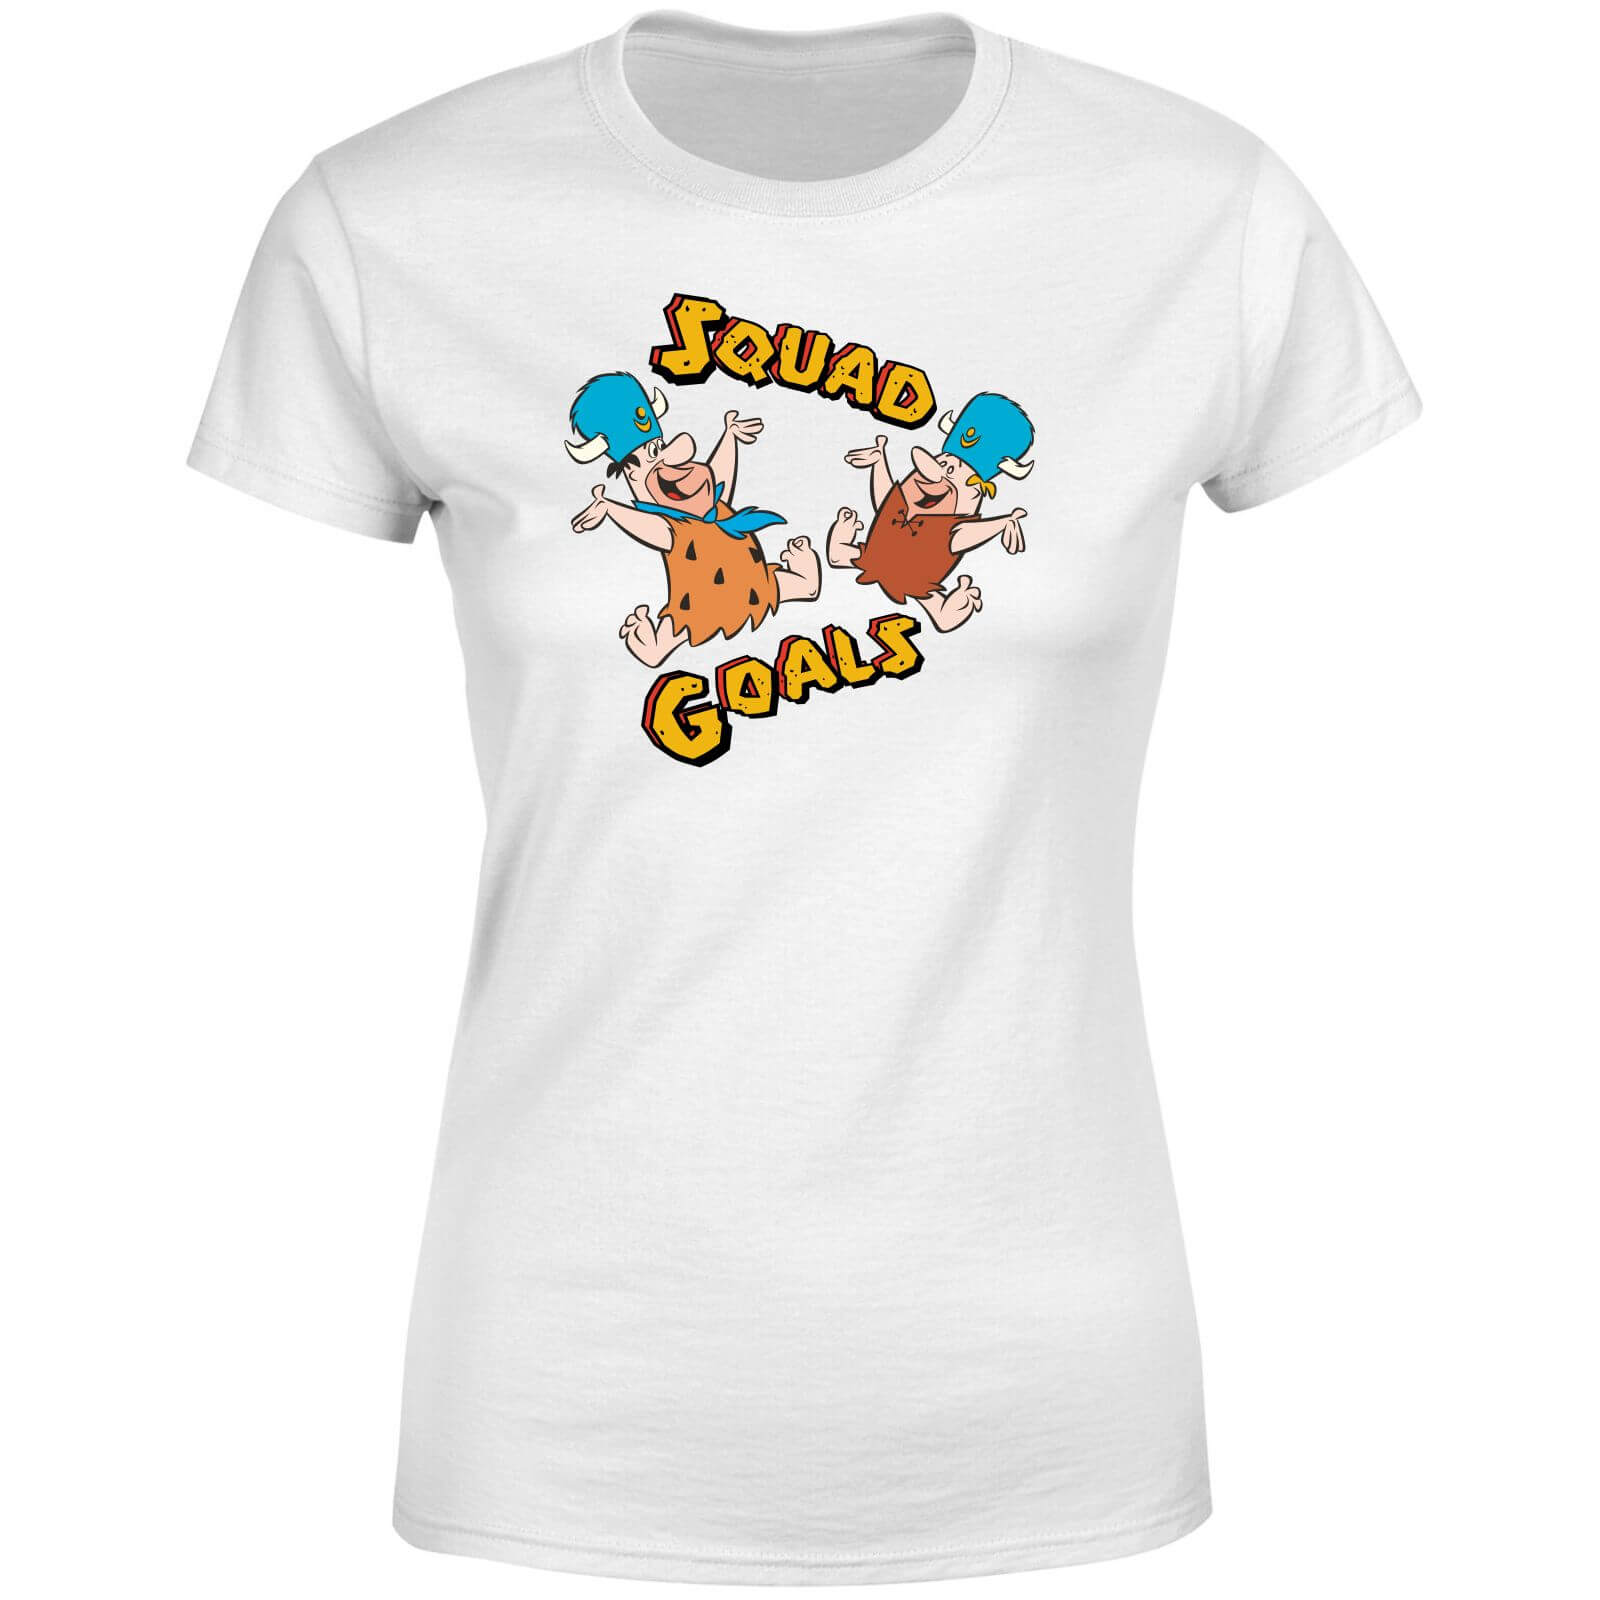 Hanna Barbera The flintstones squad goals women's t-shirt - white - xl - white